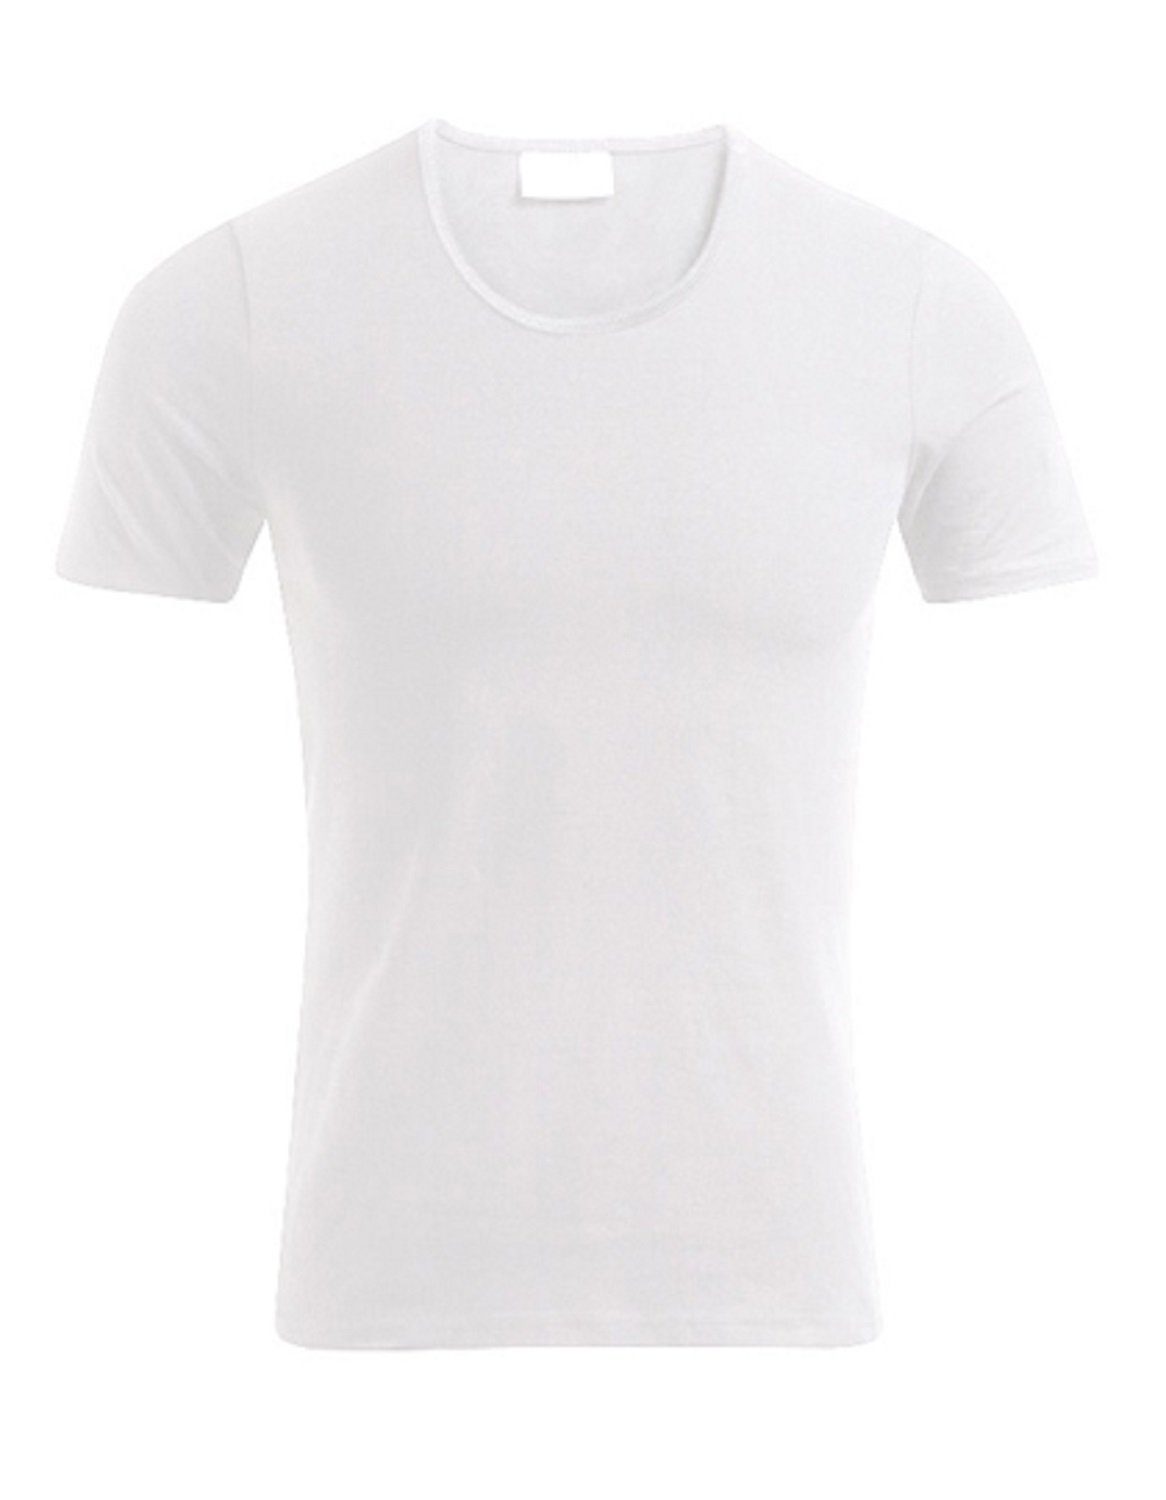 1er/2er/3er-Set - im T-Shirt Herren hochwertiges mit 180 Schnitt Weiß Fit bis Promodoro S körperbetontem (1-tlg) g/m² T-Shirt Slim XXL